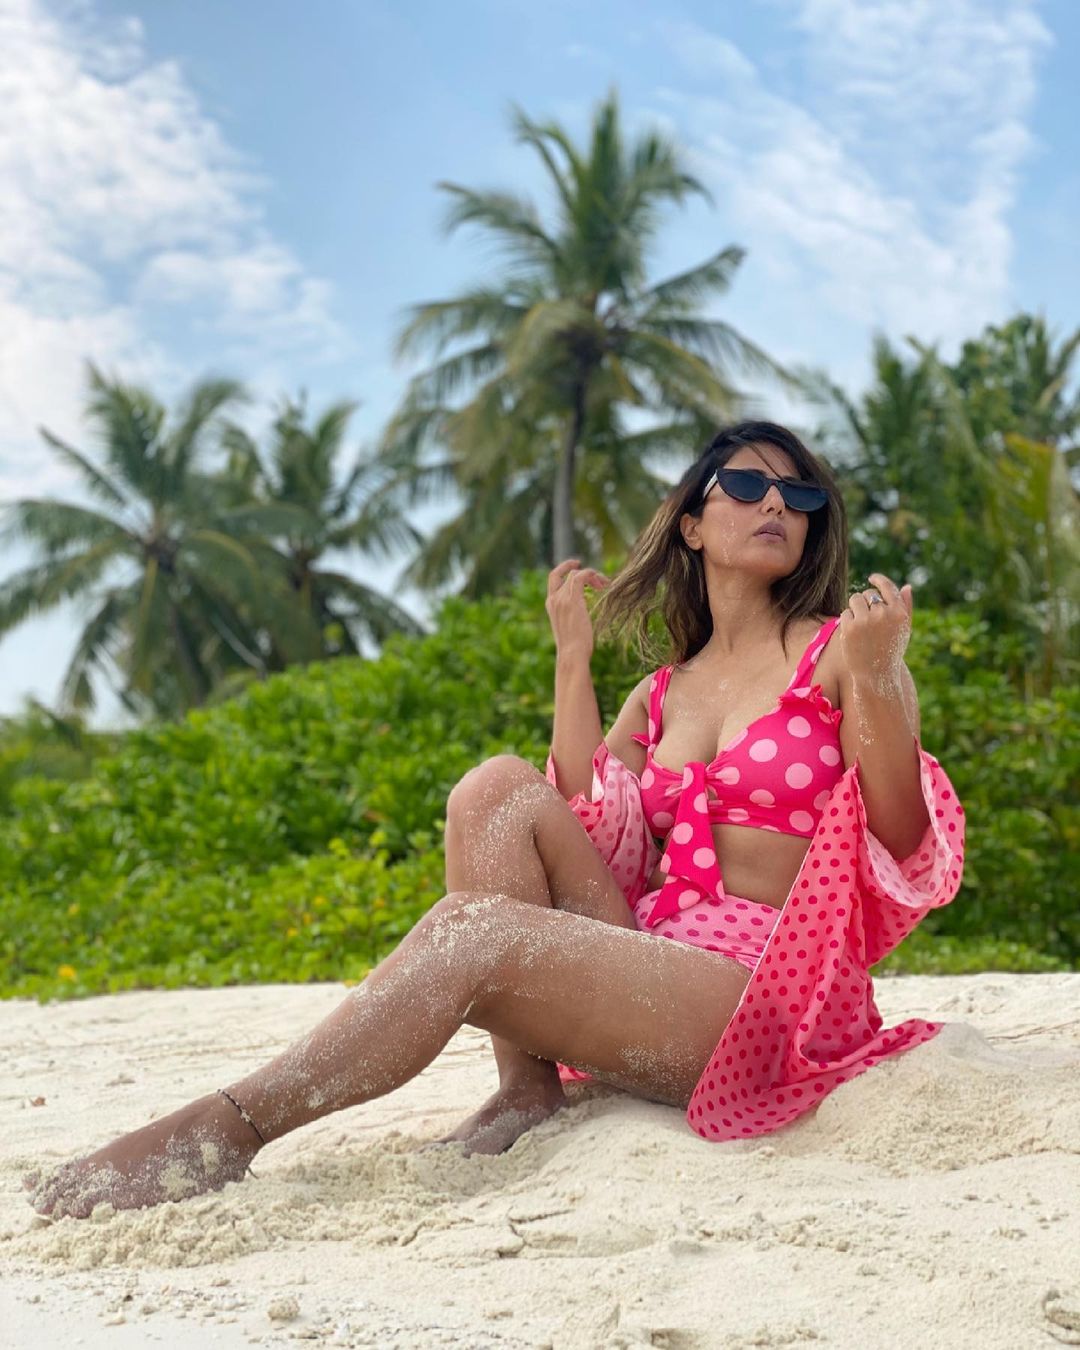 Hina Khan bikini, Hina Khan sexy photos, Hina Khan hot pics, Hina Khan monokini, Hina Khan boyfriend, Hina Khan Instagram, Hina Khan bikini pics, Hina Khan pink bikini, Hina Khan Maldives,